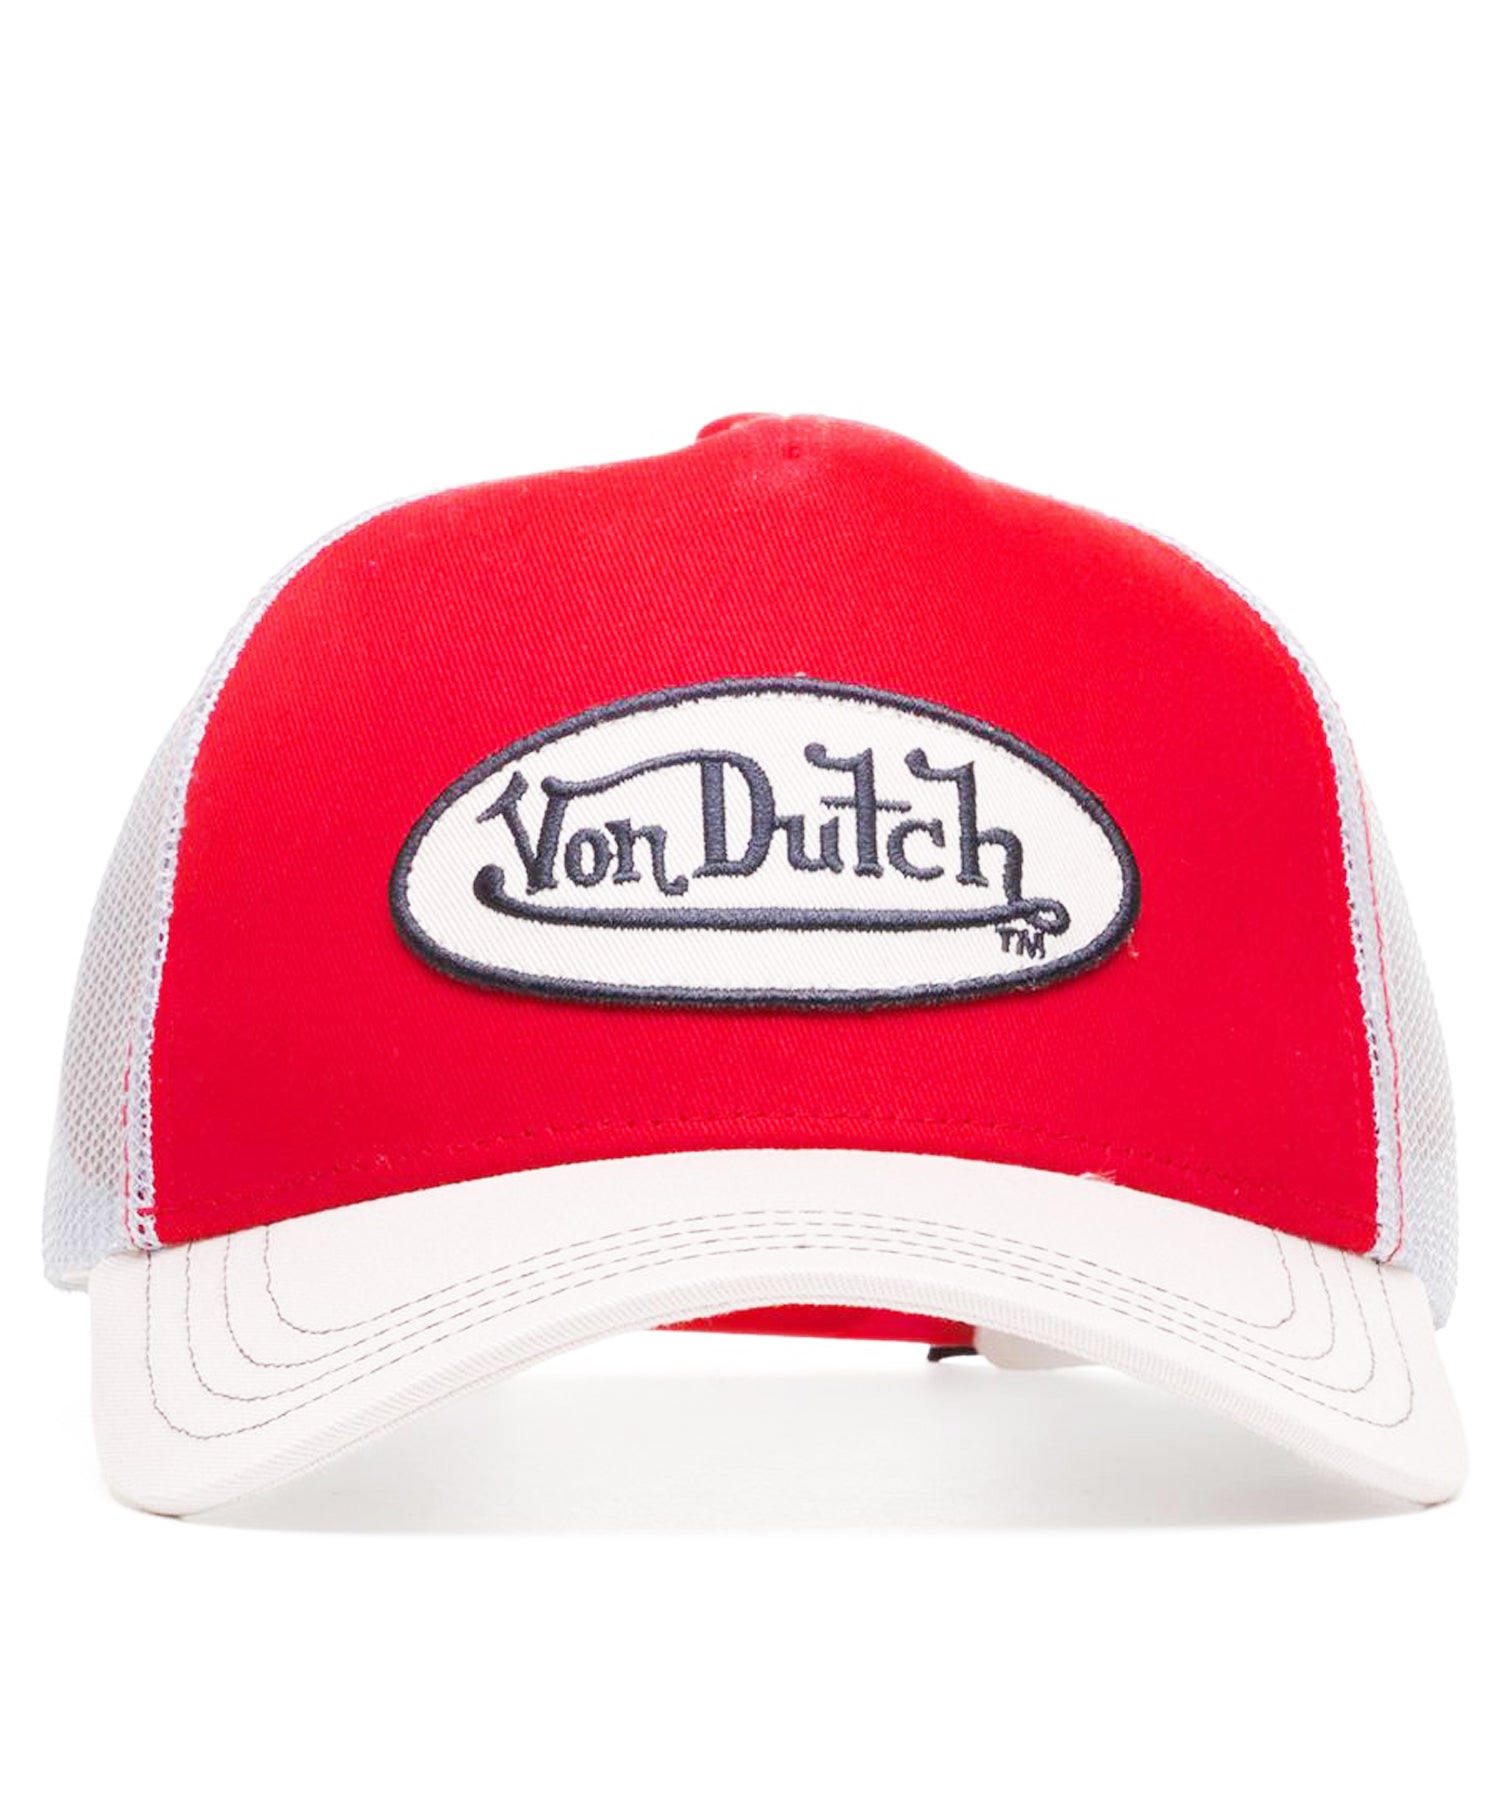 gorra-von-dutch-tipo-trucker-col-red-rejilla-transpirable-color-rojo-y-blanco-logo-von-dutch